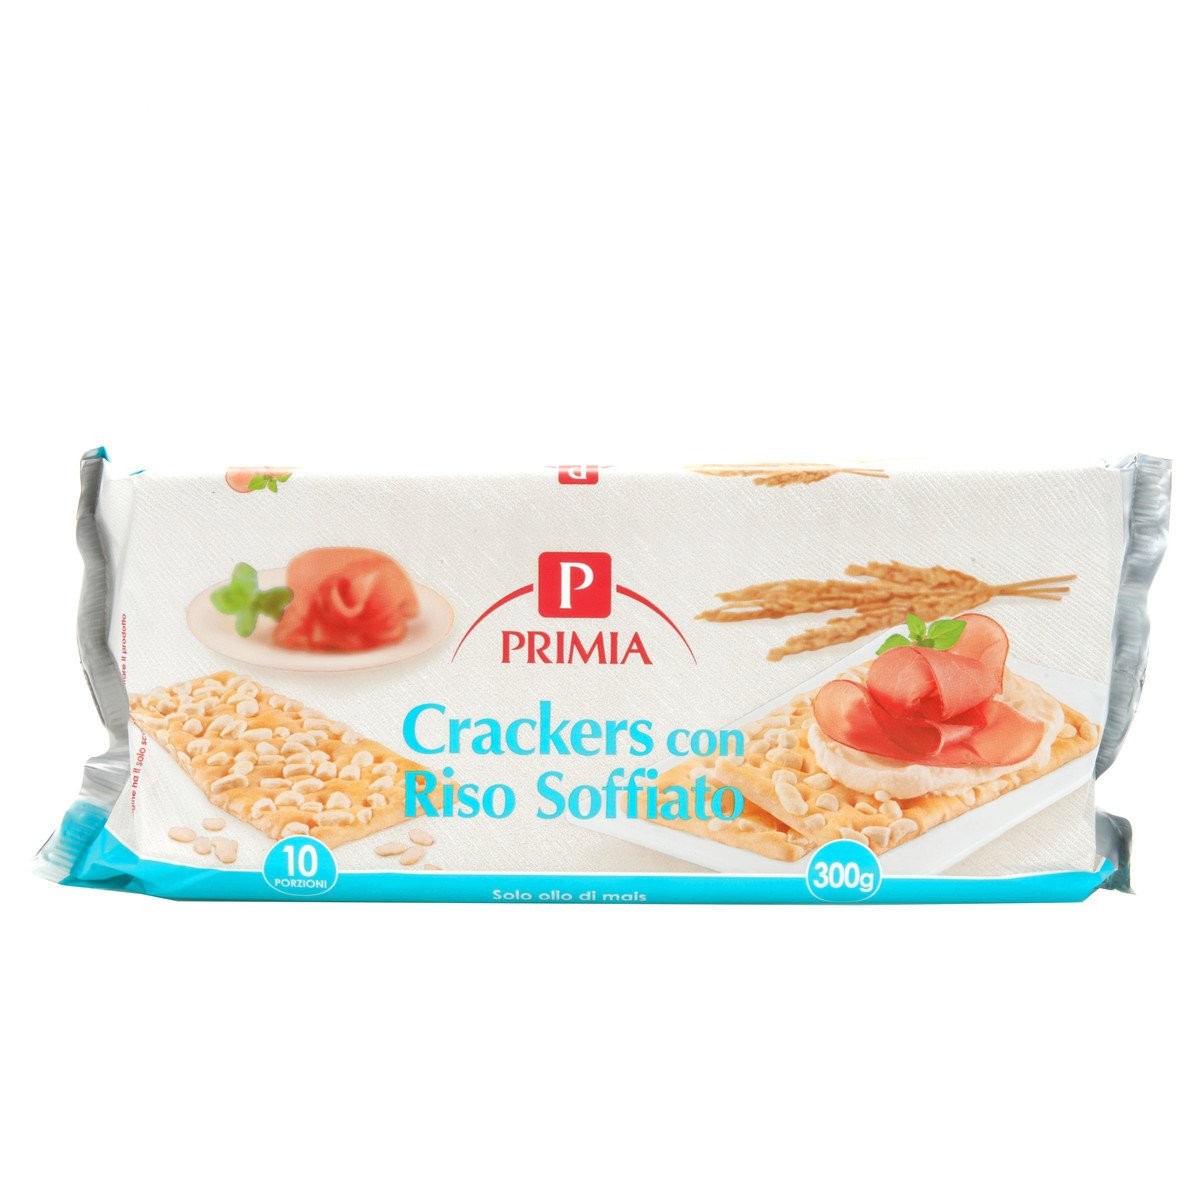 Crackers con riso soffiato